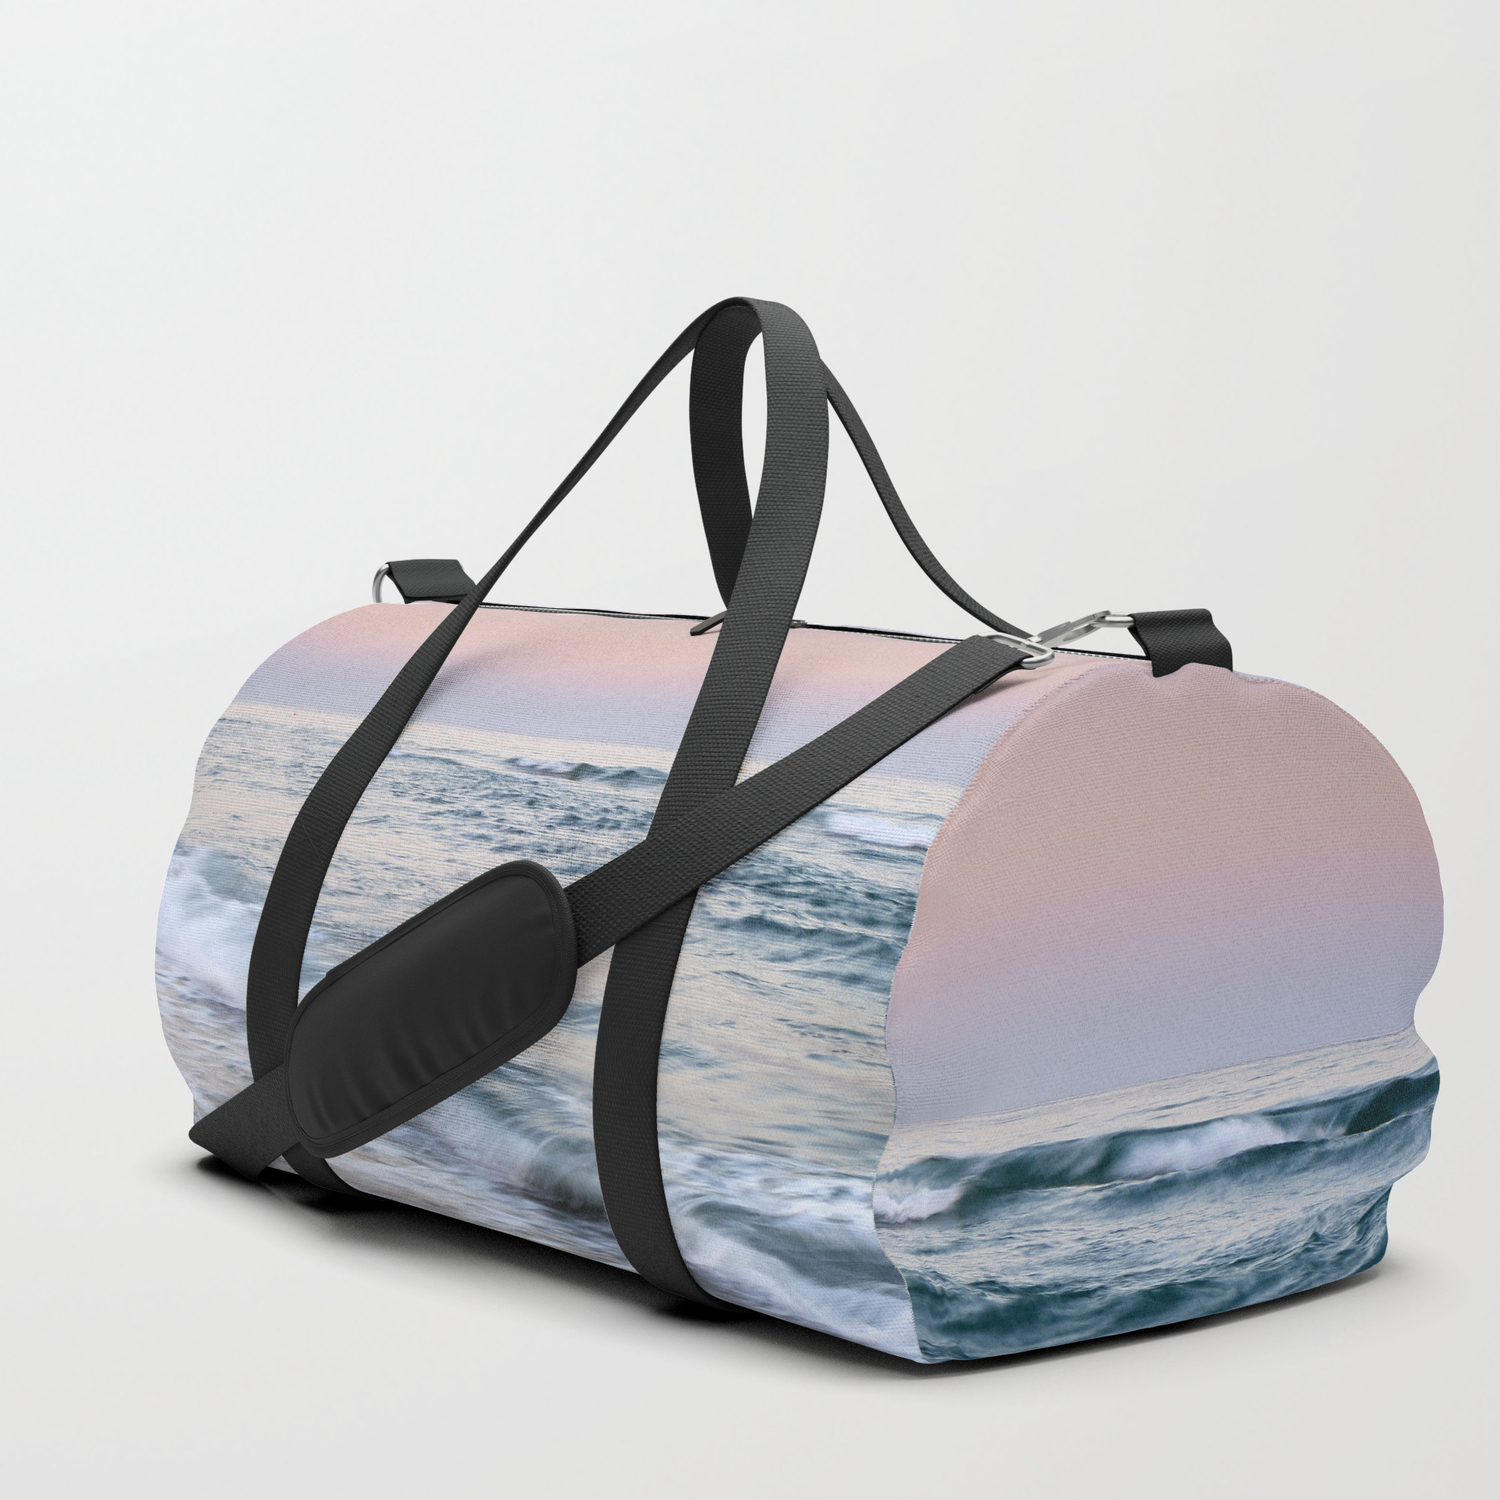 Sunset Sea Print Weekender Bag